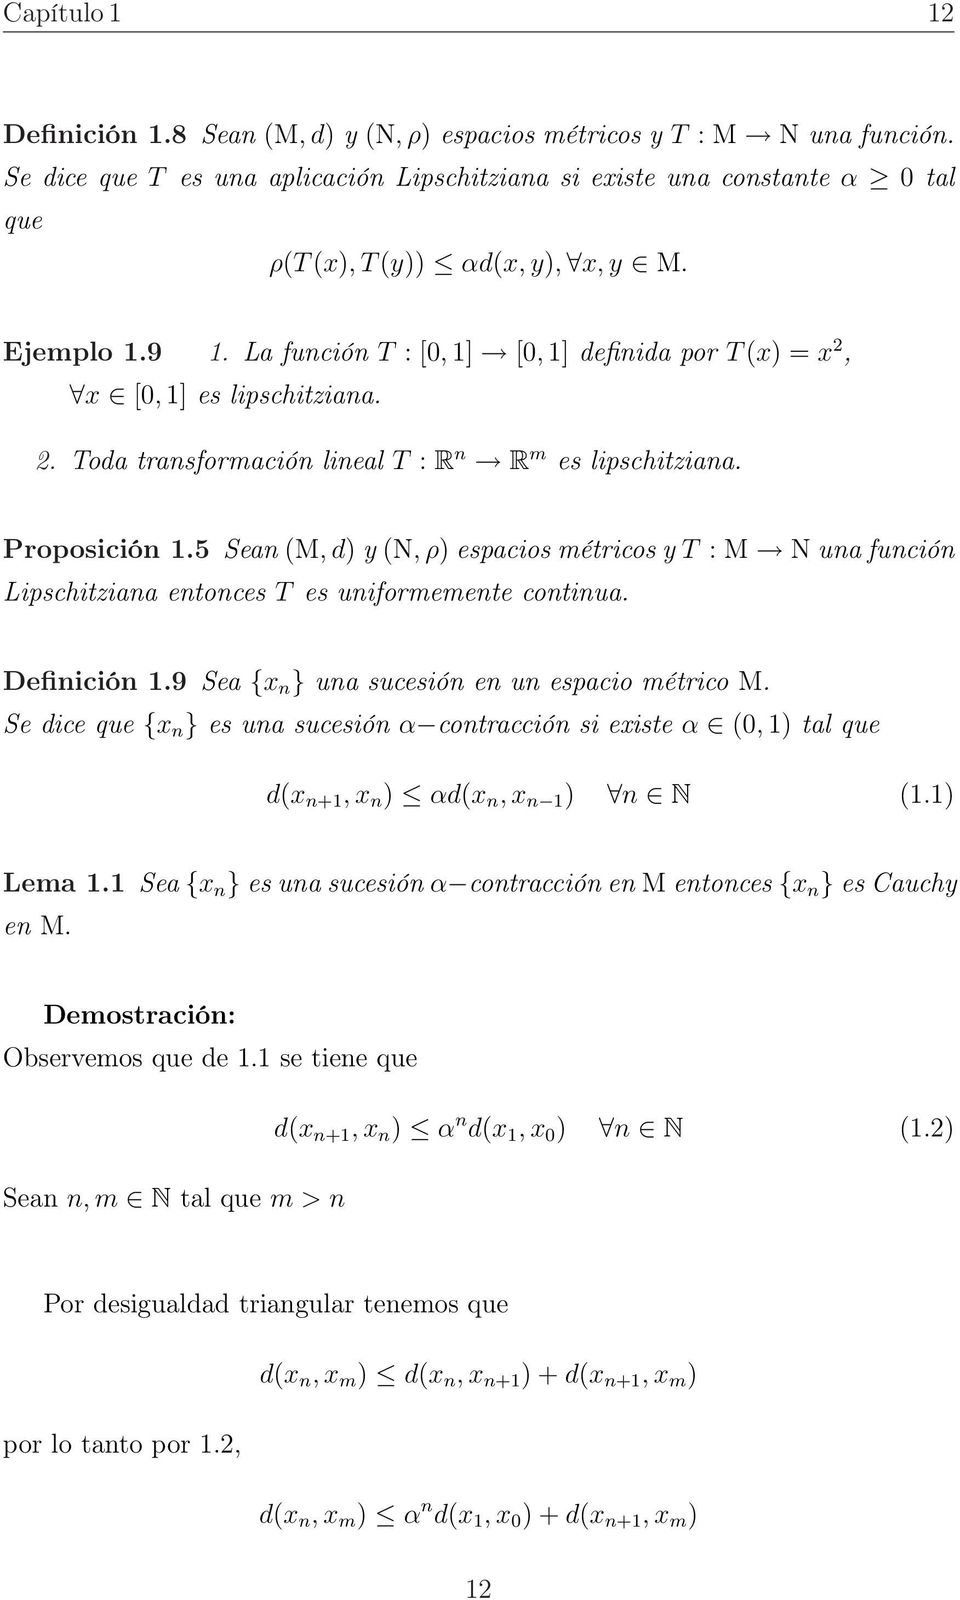 La unción T : [0, 1] [0, 1] deinida por T (x) = x 2, x [0, 1] es lipschitziana. 2. Toda transormación lineal T : R n R m es lipschitziana. Proposición 1.